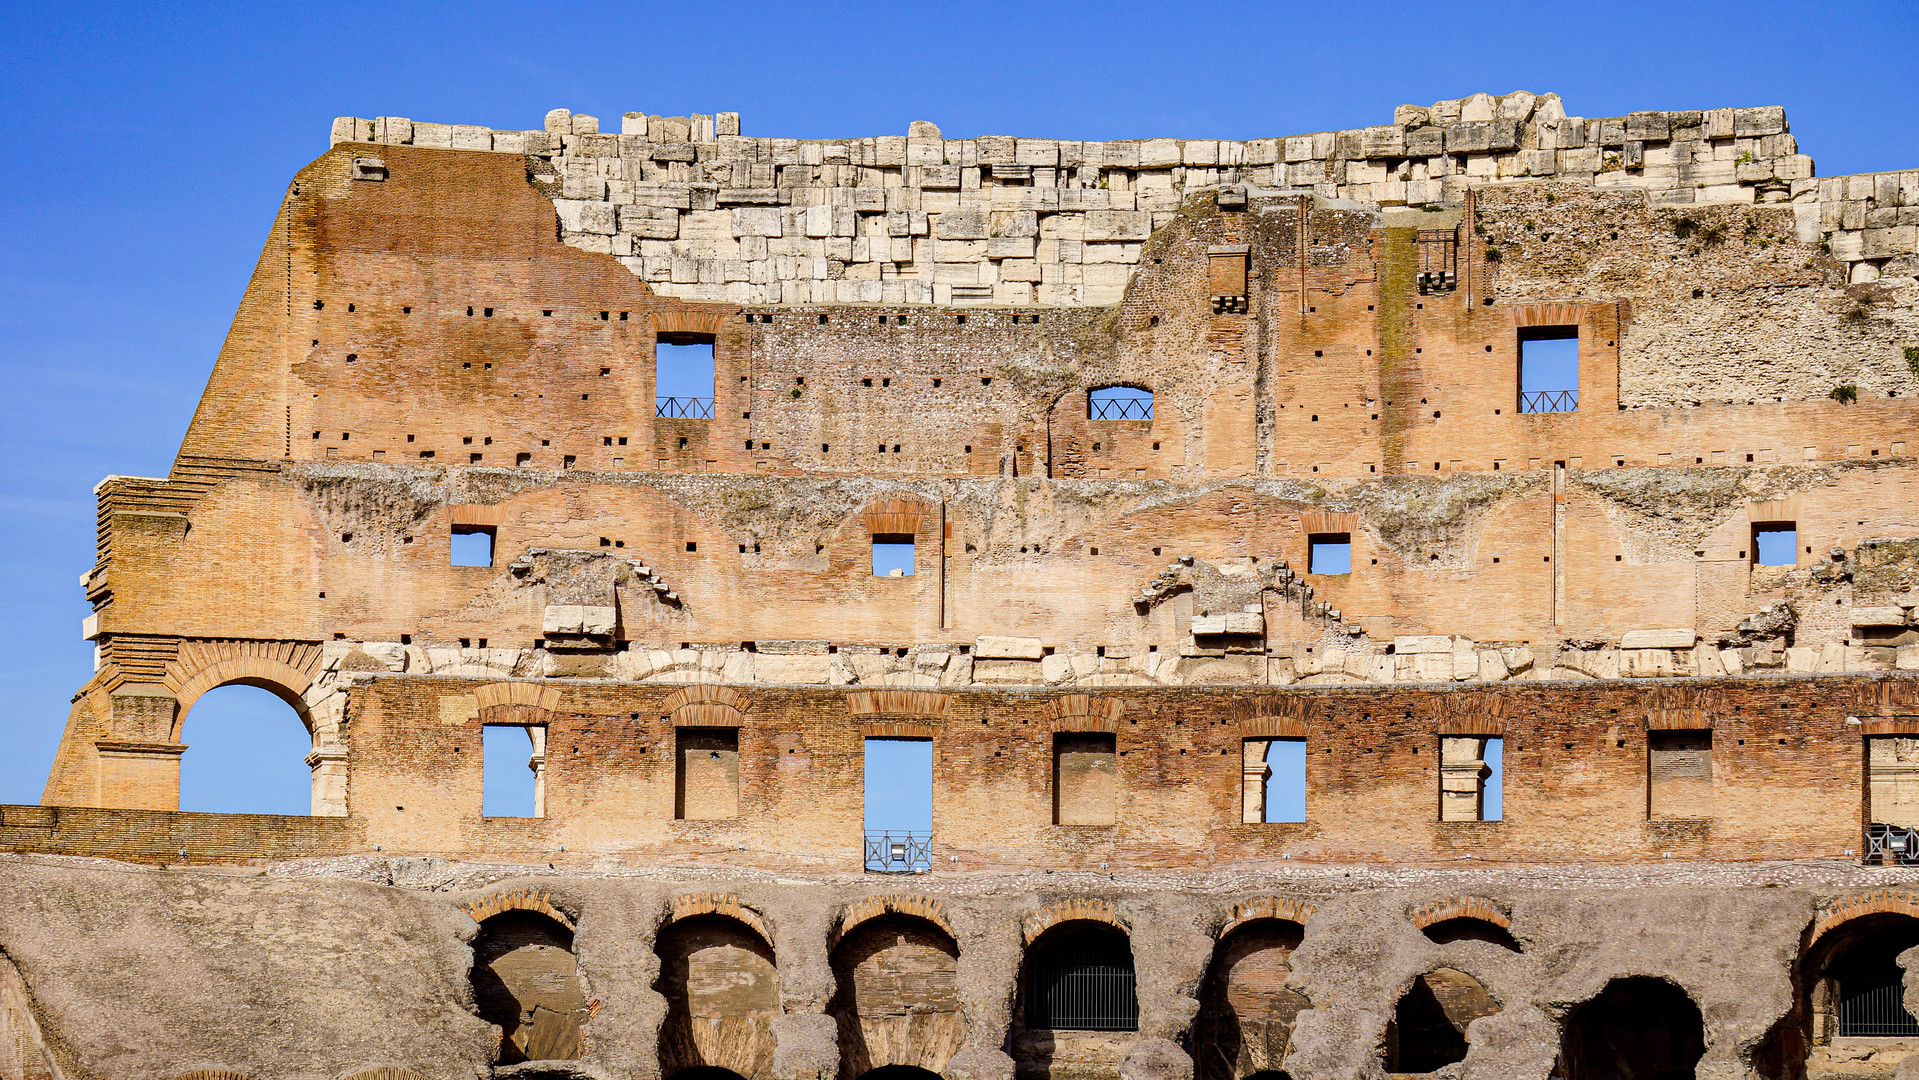 Im Colosseum mit Detailansicht auf die Fragmente der hohen Ränge